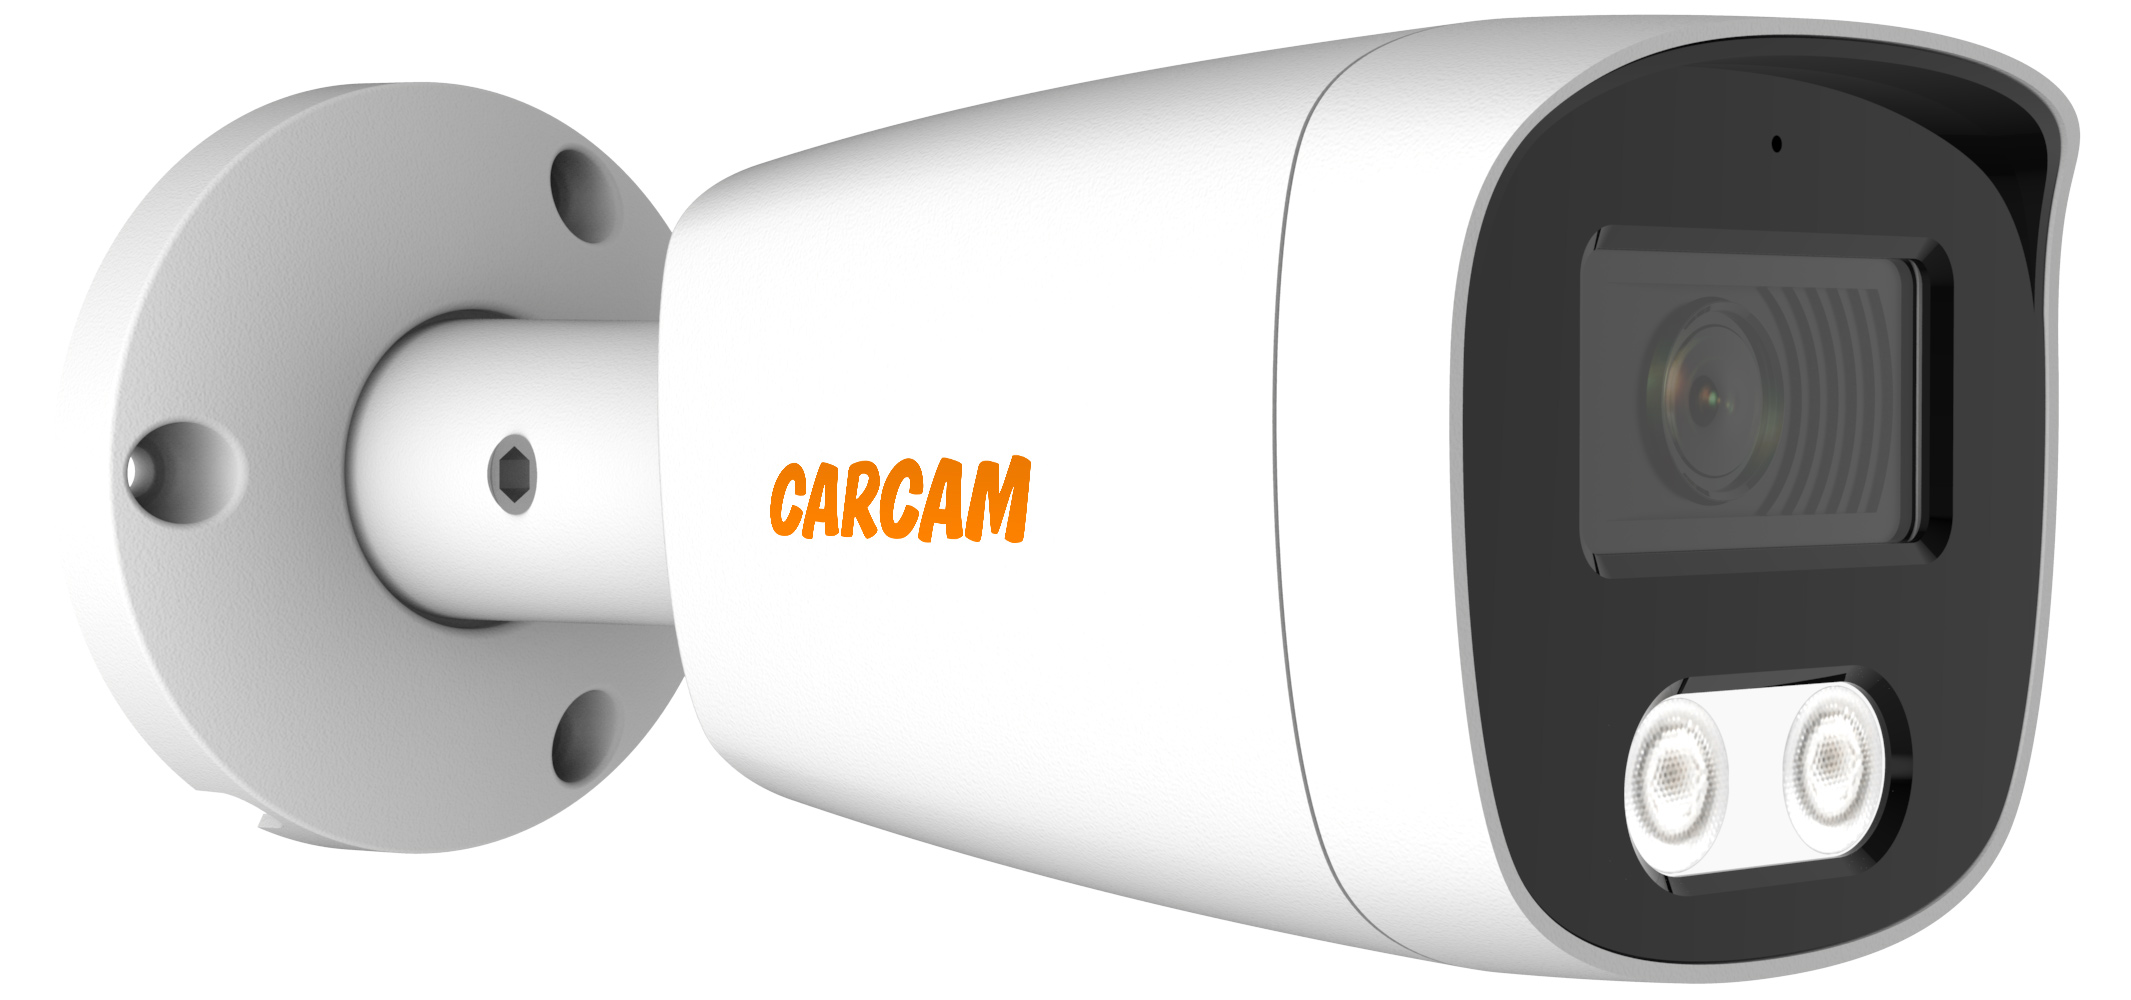 Камера видеонаблюдения CARCAM 8MP Bullet IP Camera 8170SDM цилиндрическая ahd камера carcam 5mp bullet hd camera 5142 2 8 12mm